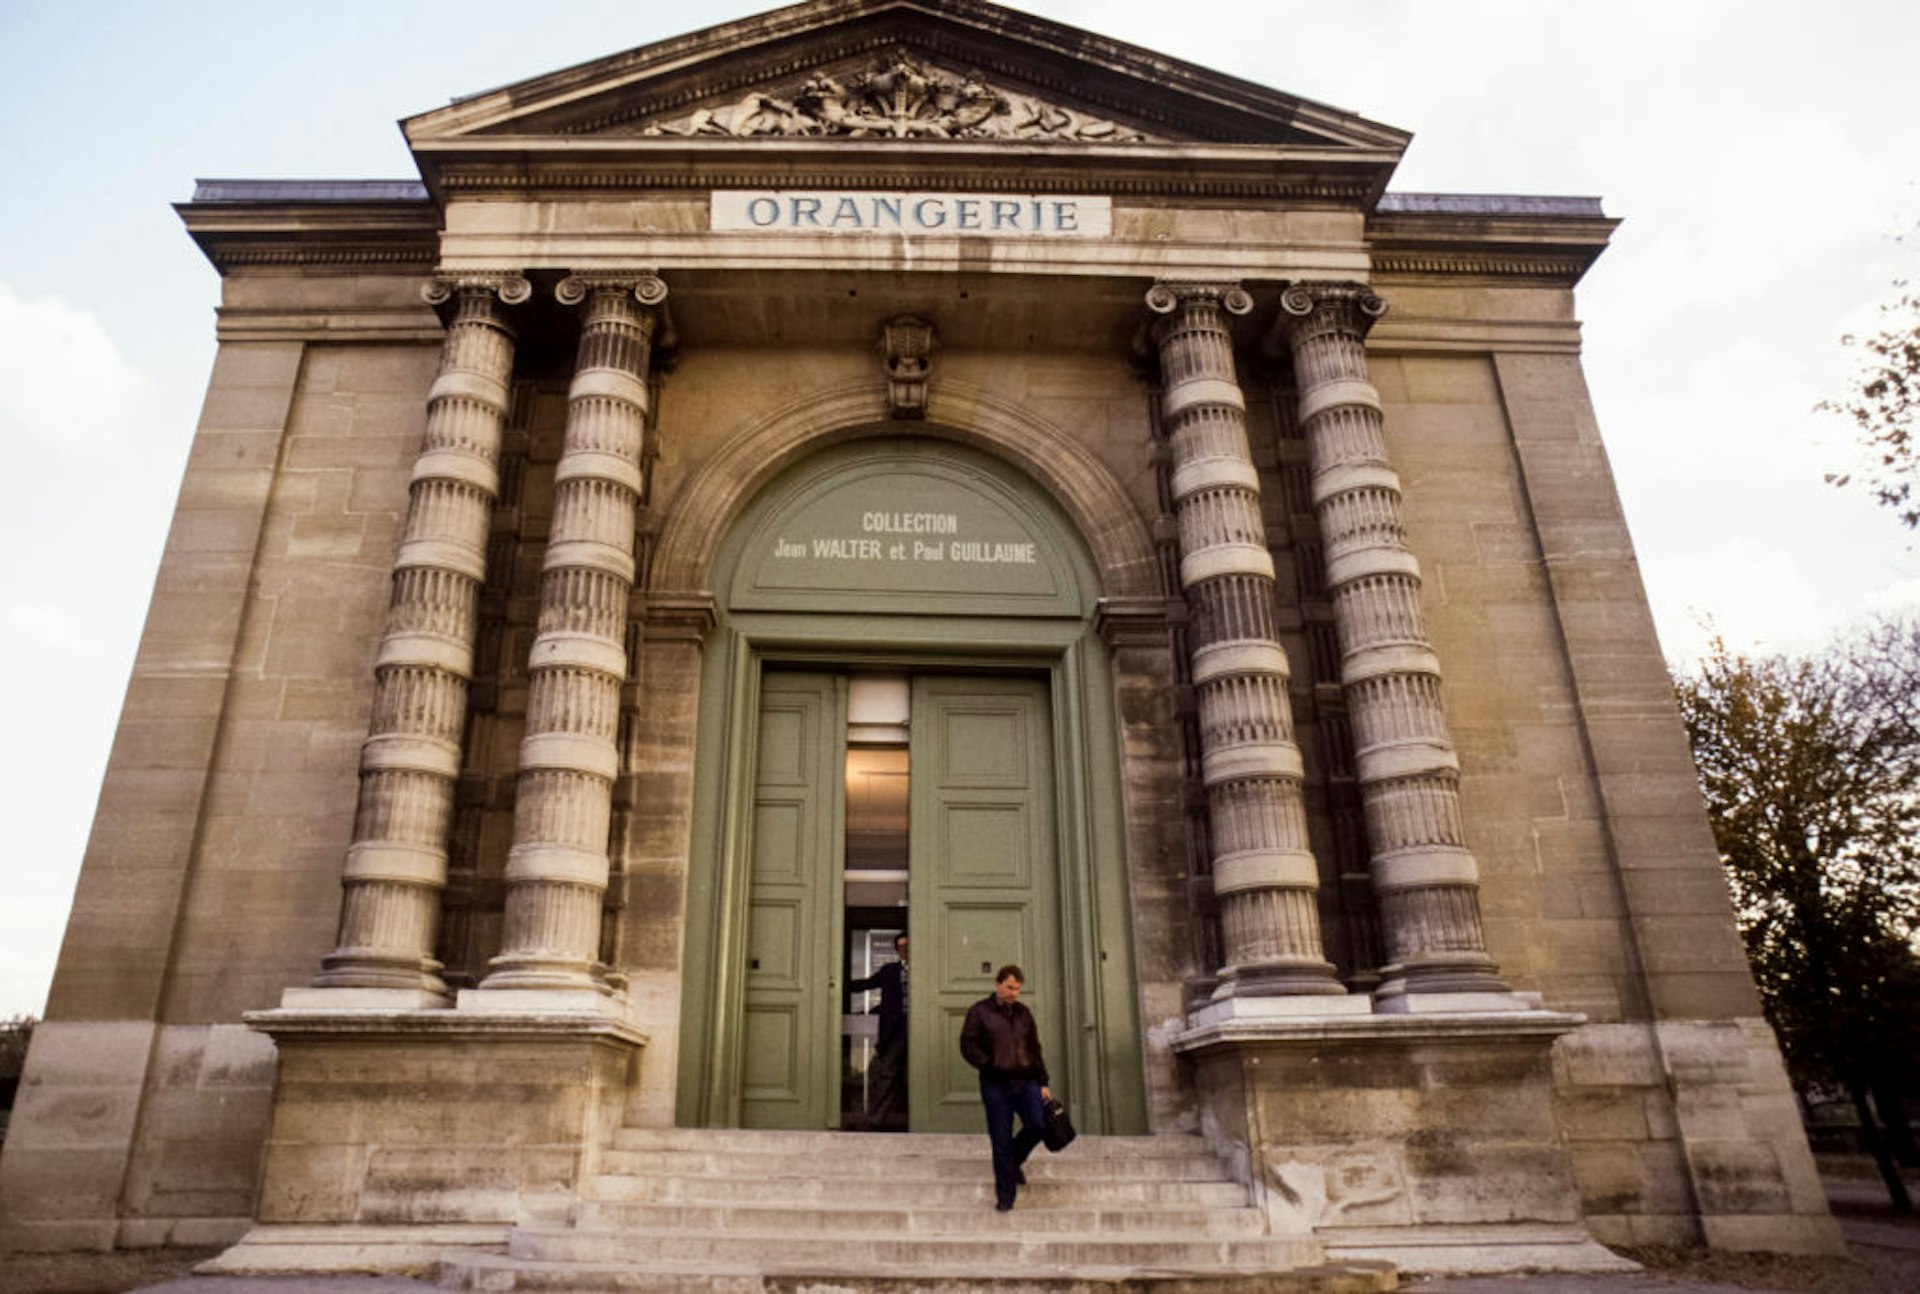 External view of the Musée de l'Orangerie